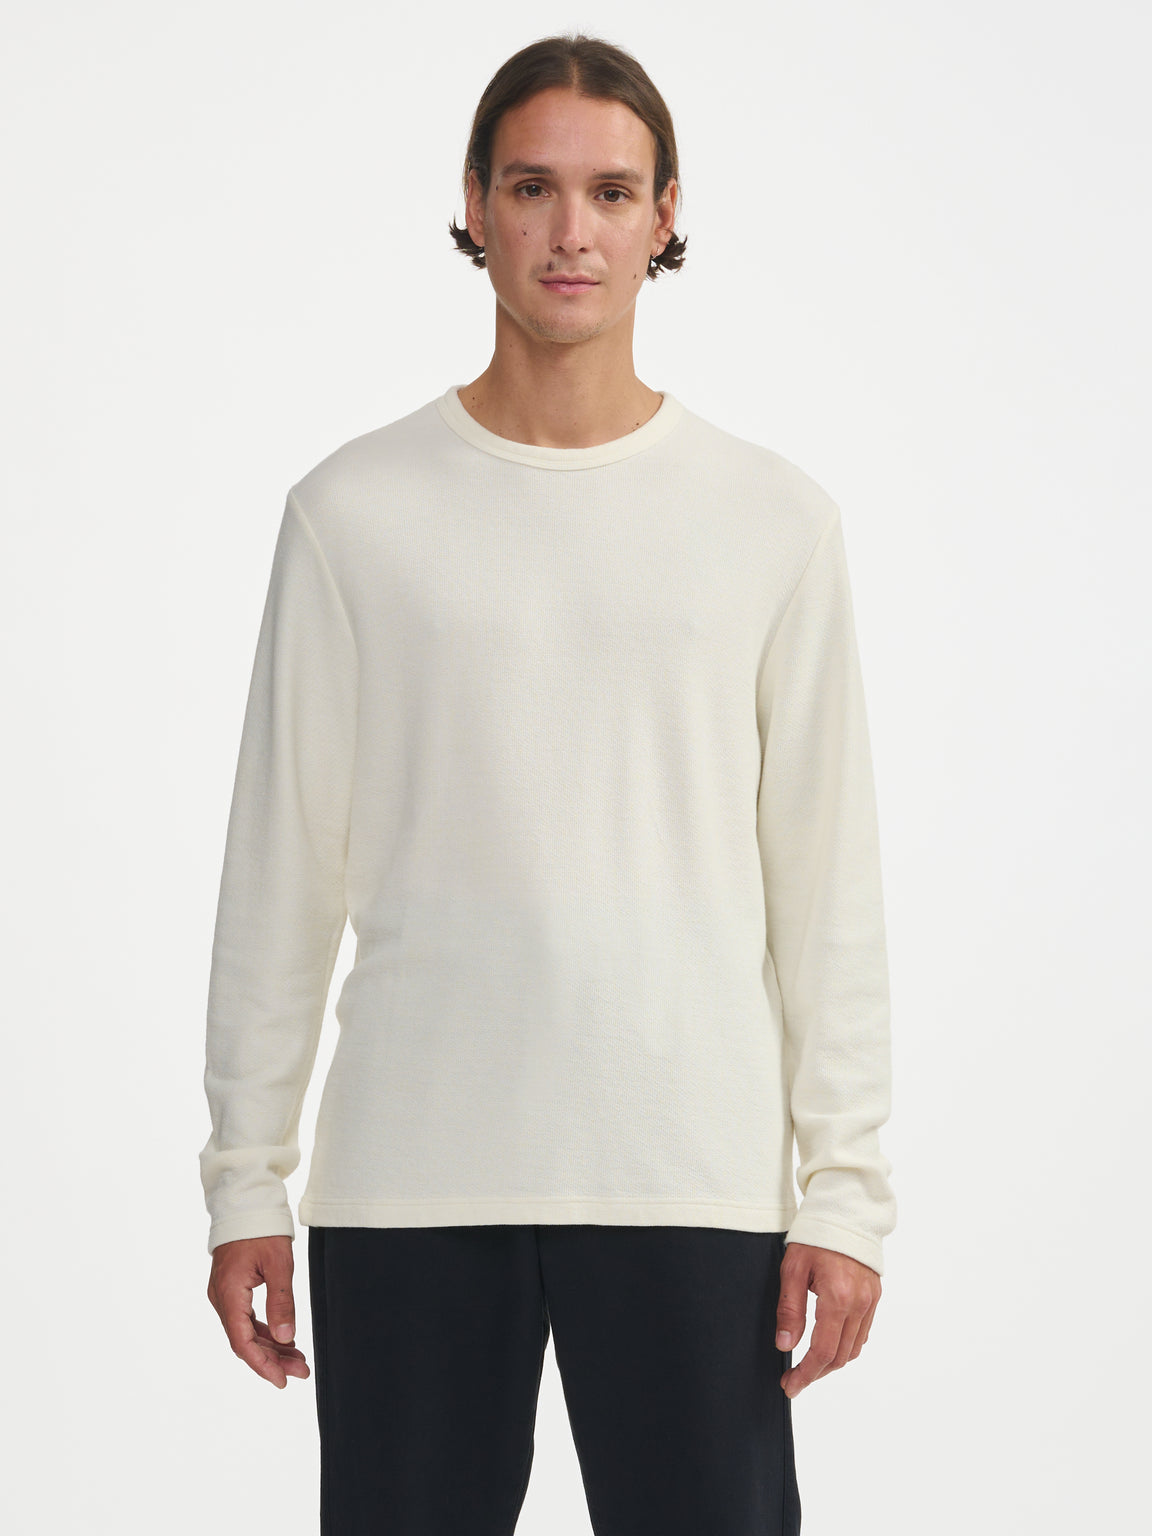 Fresh T-shirt - White | Men Collection | Bellerose